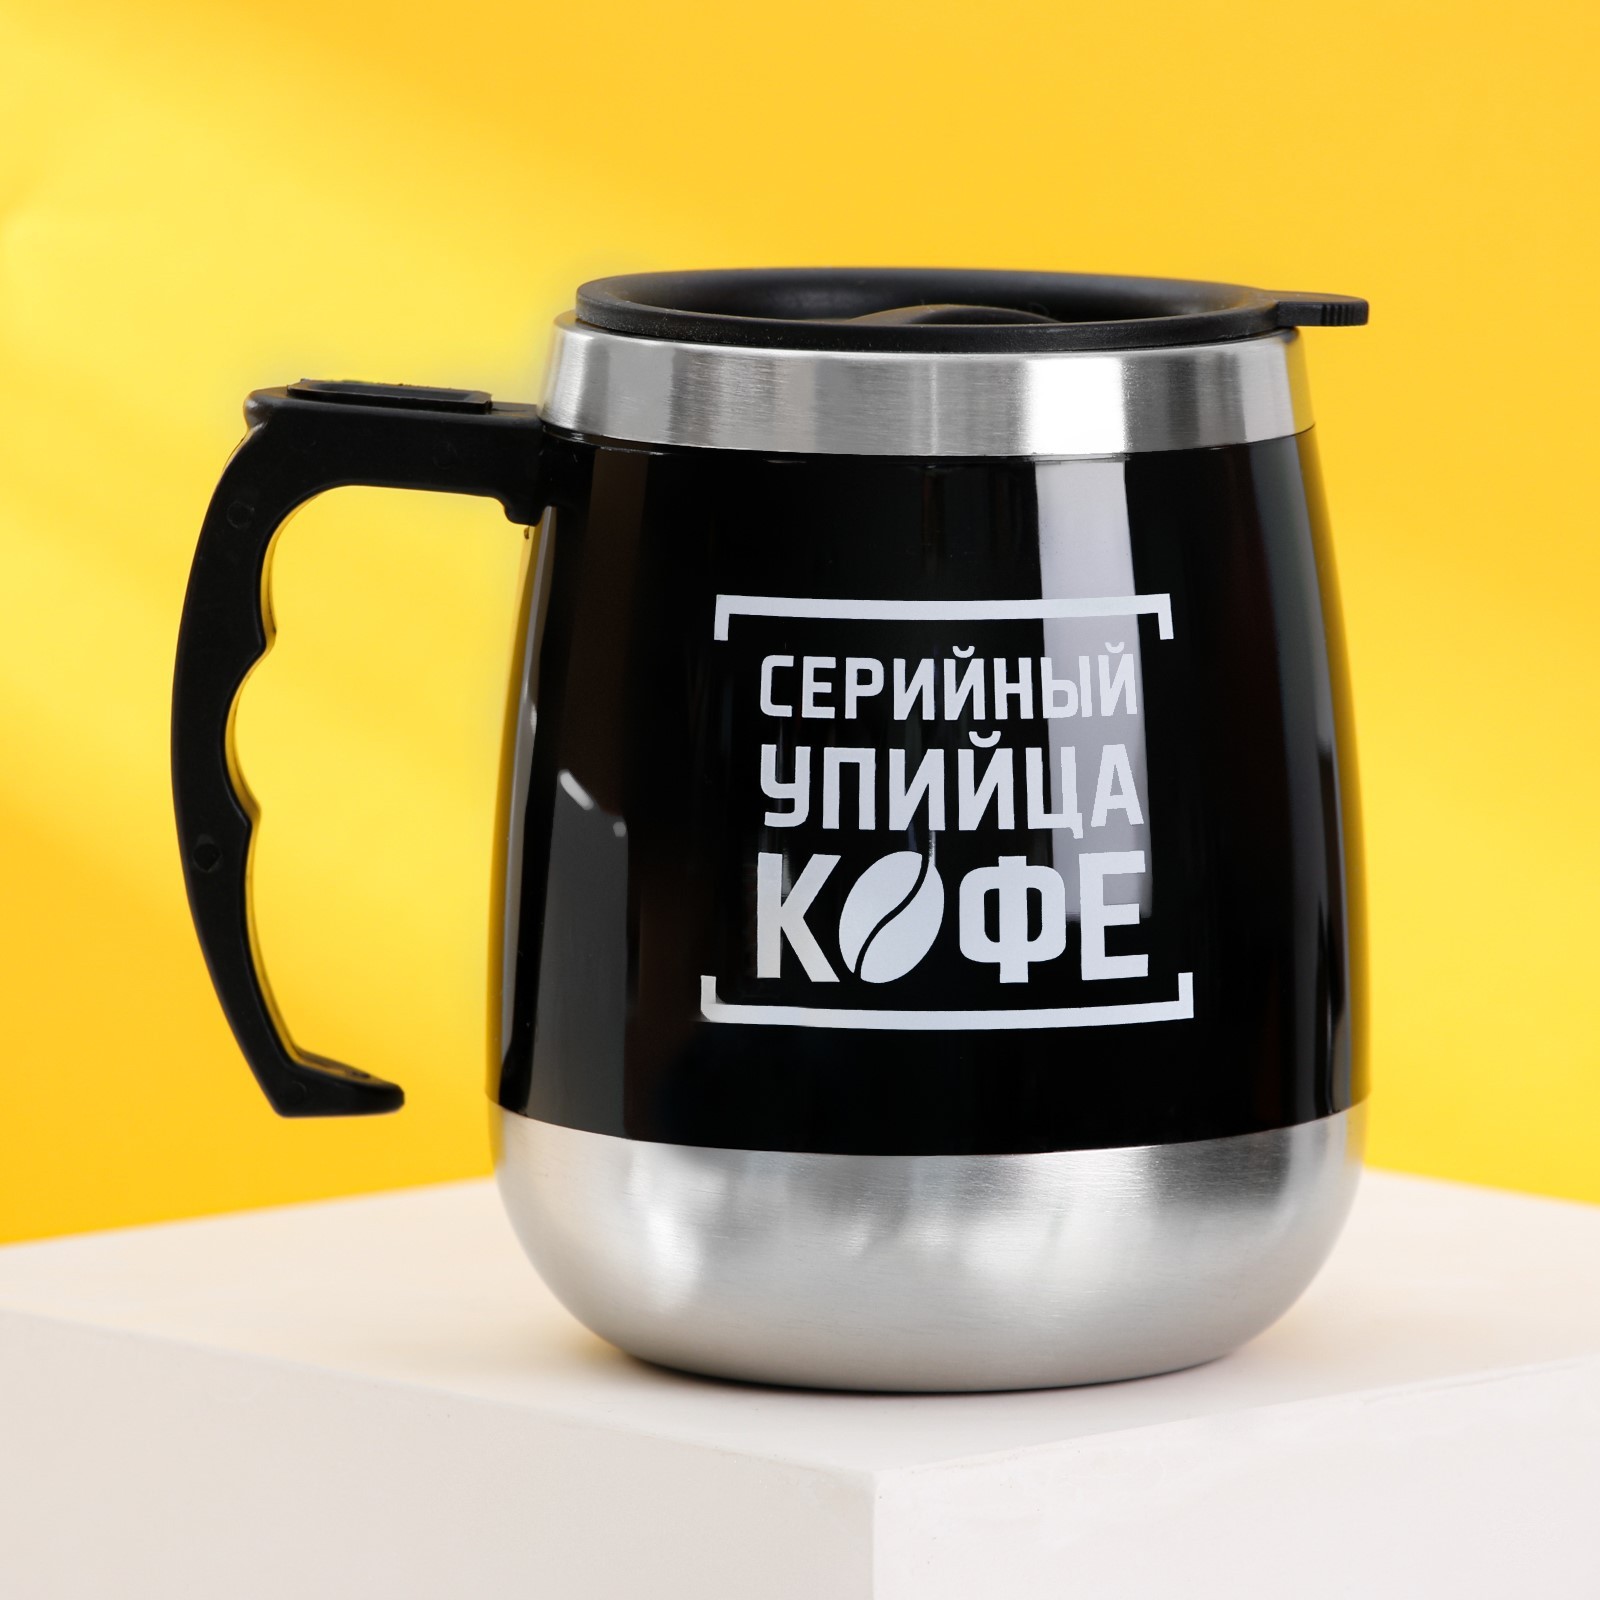 Термокружка Серийный упийца кофе (400 мл) КОМАНДОР